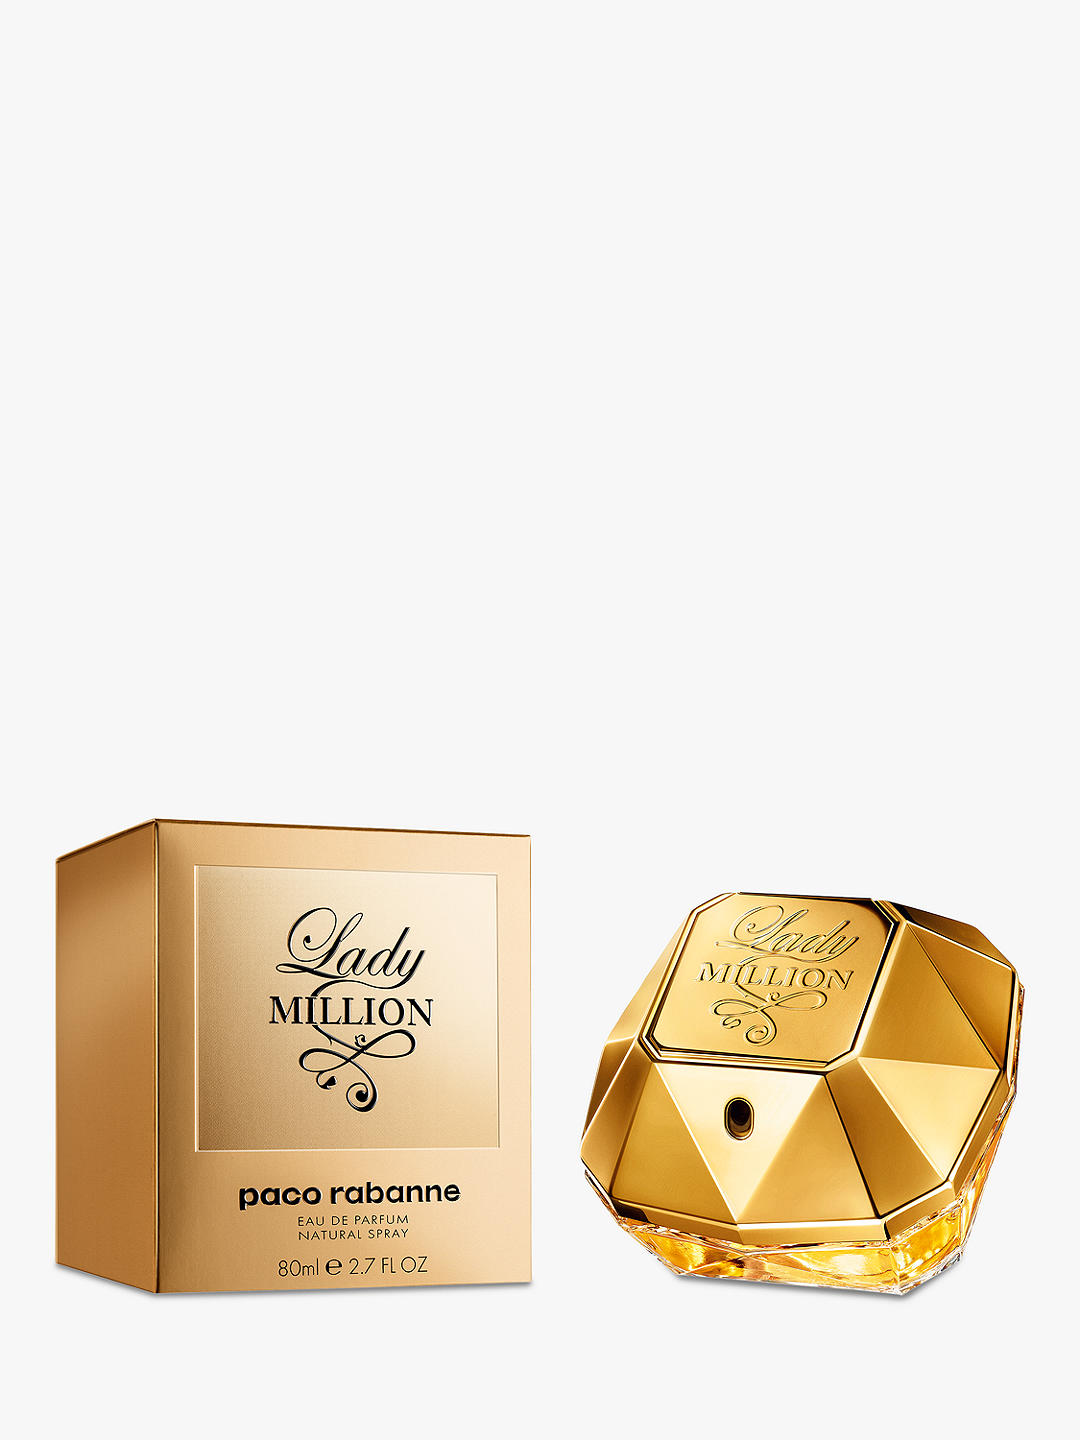 Paco Rabanne Lady Million Eau de Parfum, 80ml at John Lewis & Partners